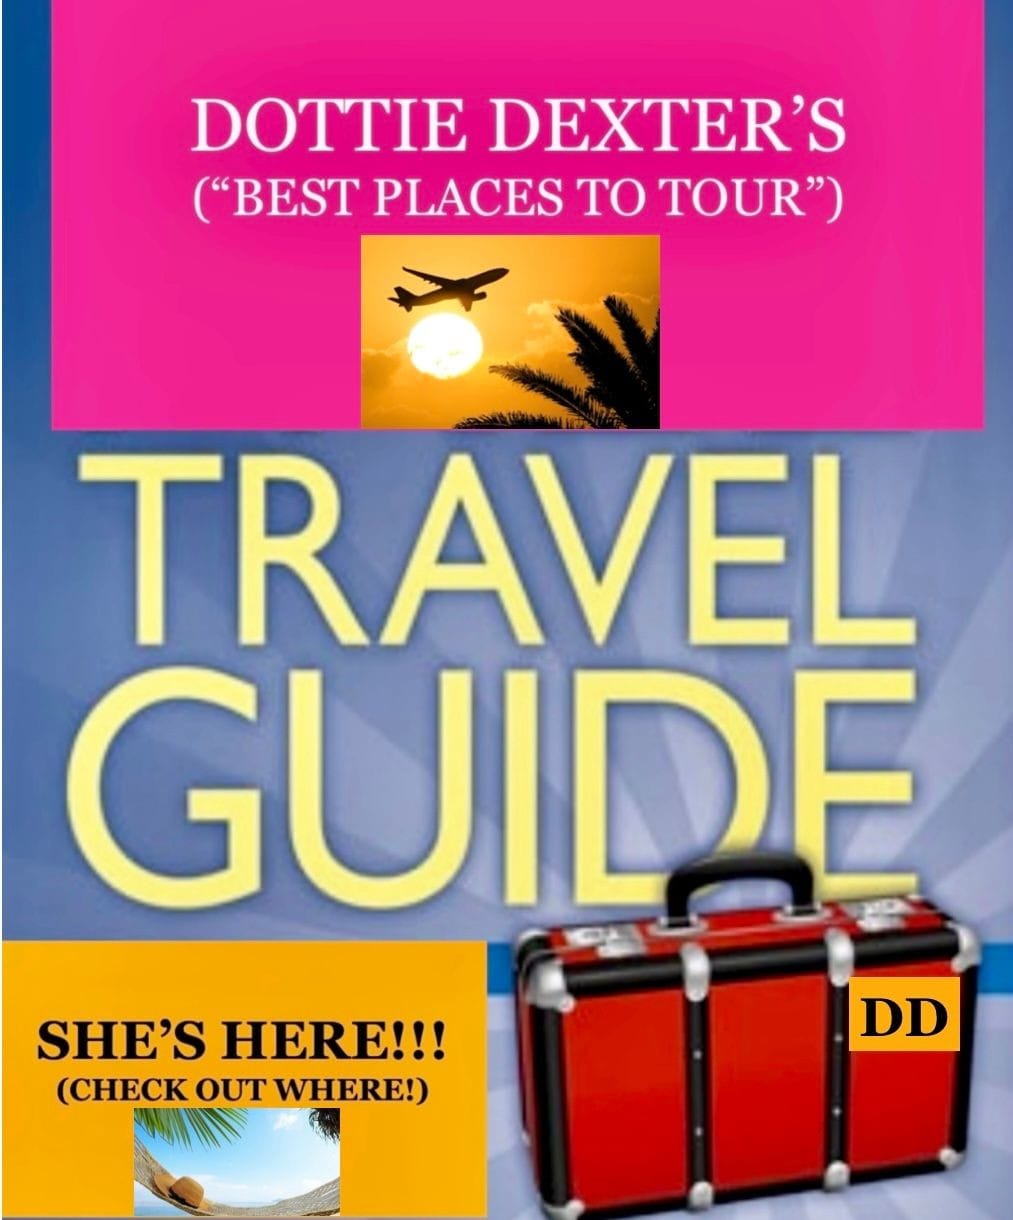 Dottie Dexter Travel Guide highlights the best/joyful travel!